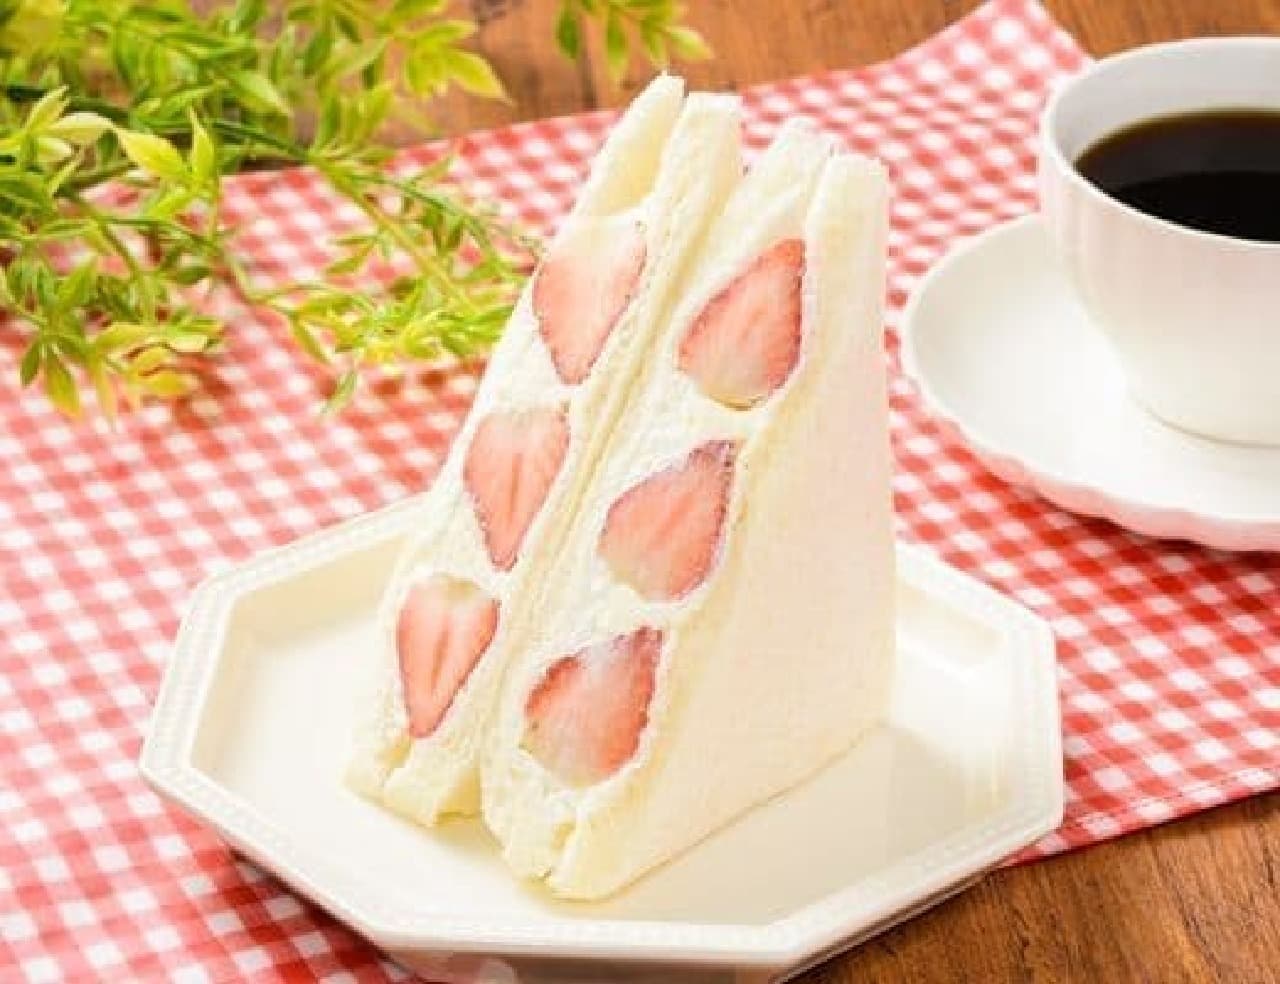 Lawson "Strawberry Mascarpone Sandwich"